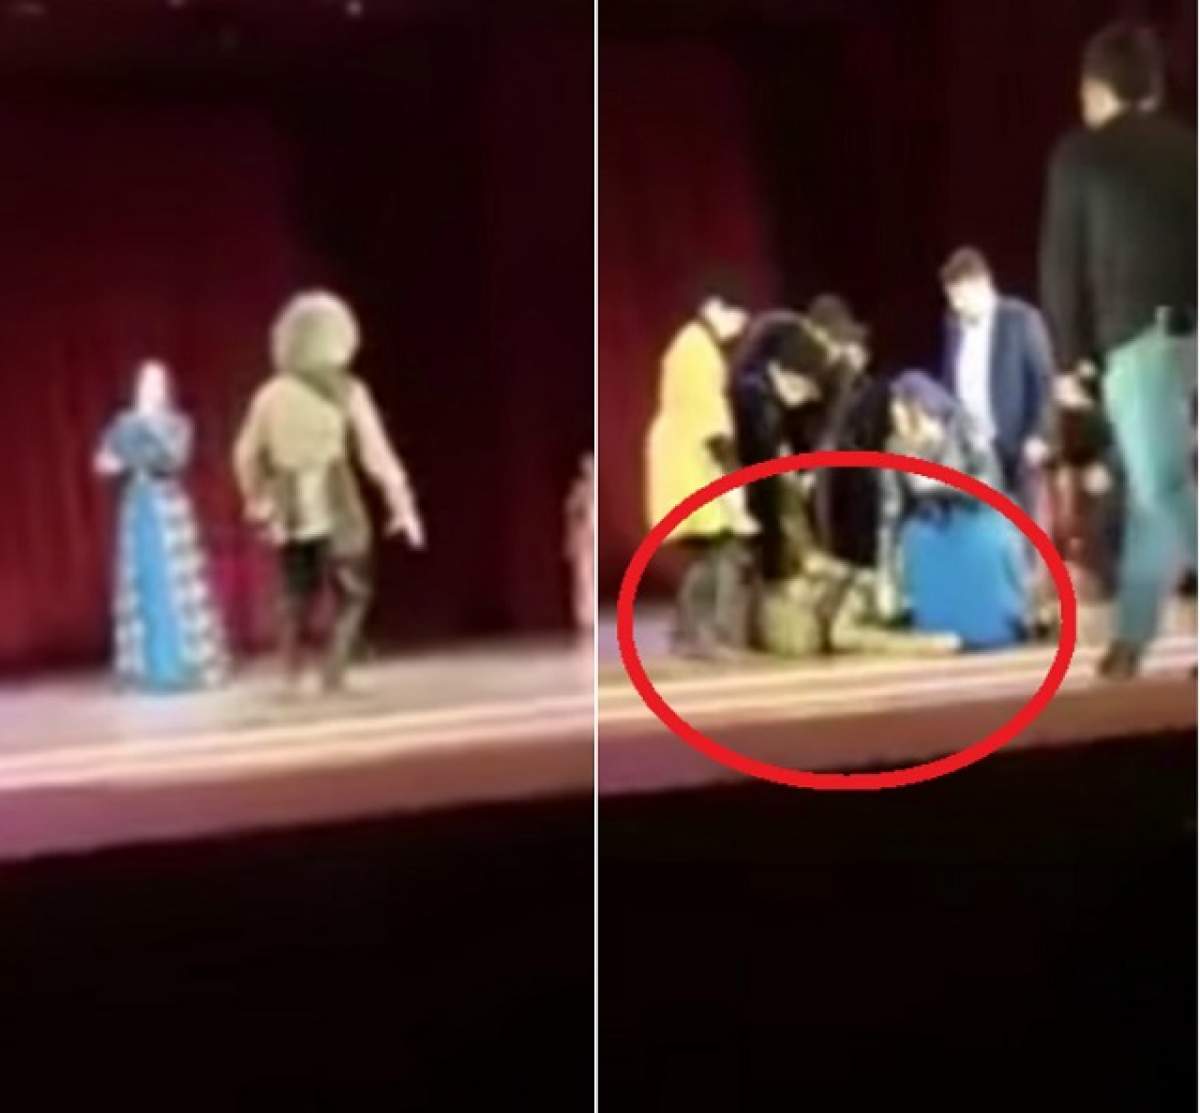 VIDEO / Un mare artist a murit pe scenă, în faţa tuturor! Spectatorii au aplaudat, dar apoi şi-au dat seama că nu e o scamatorie